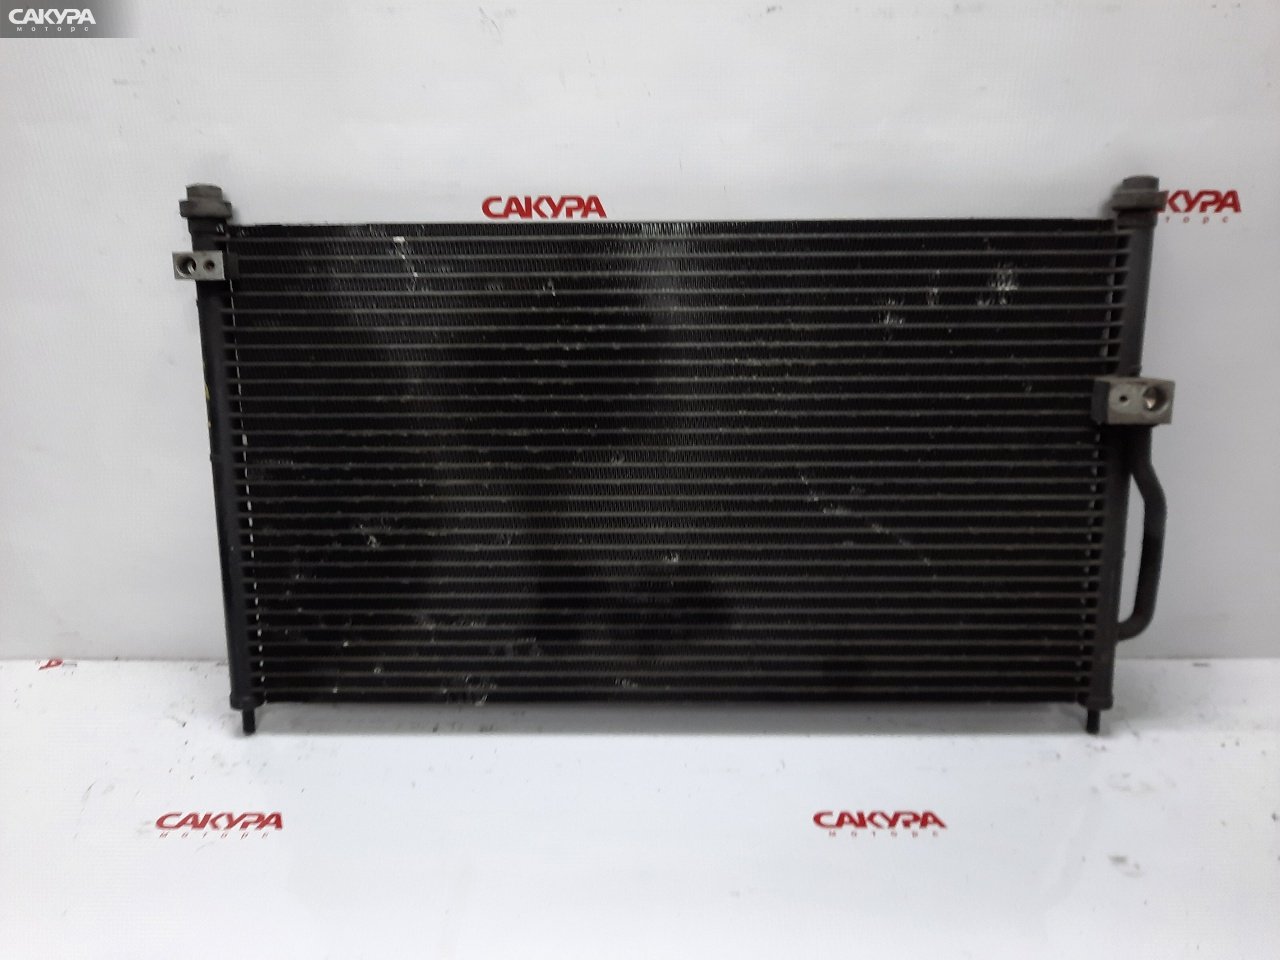 Радиатор кондиционера Honda CR-V RD1 B20B: купить в Сакура Красноярск.